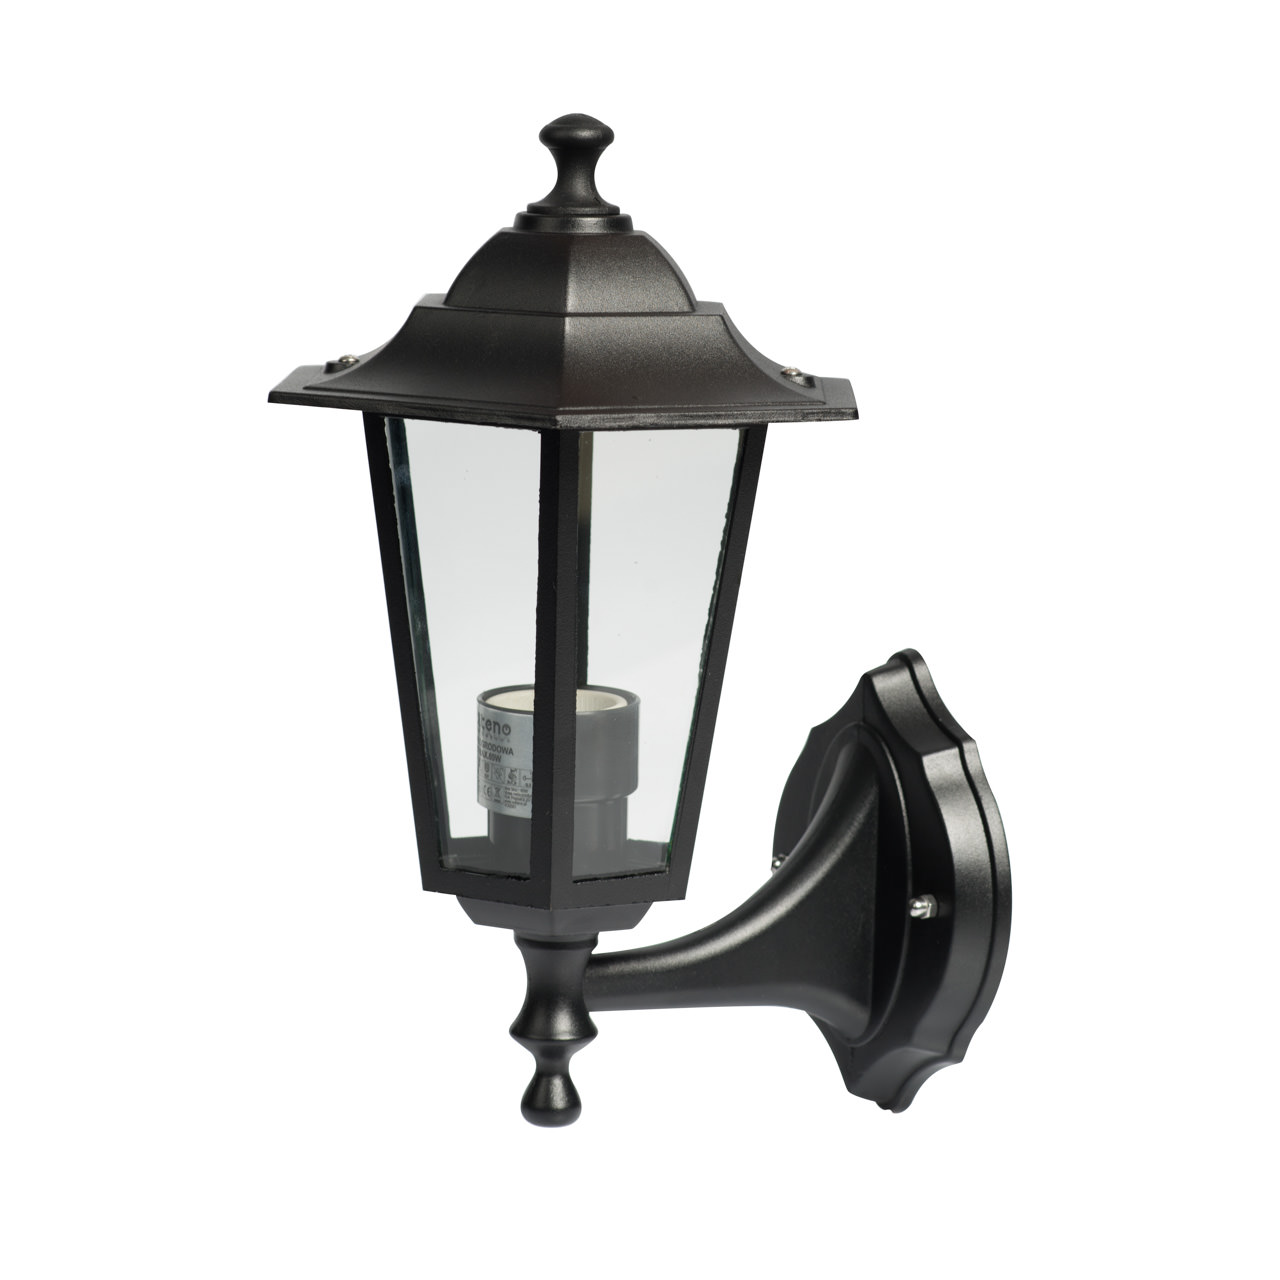 Герметичный уличный светильник, черный, 60W E27 12*20*41cm